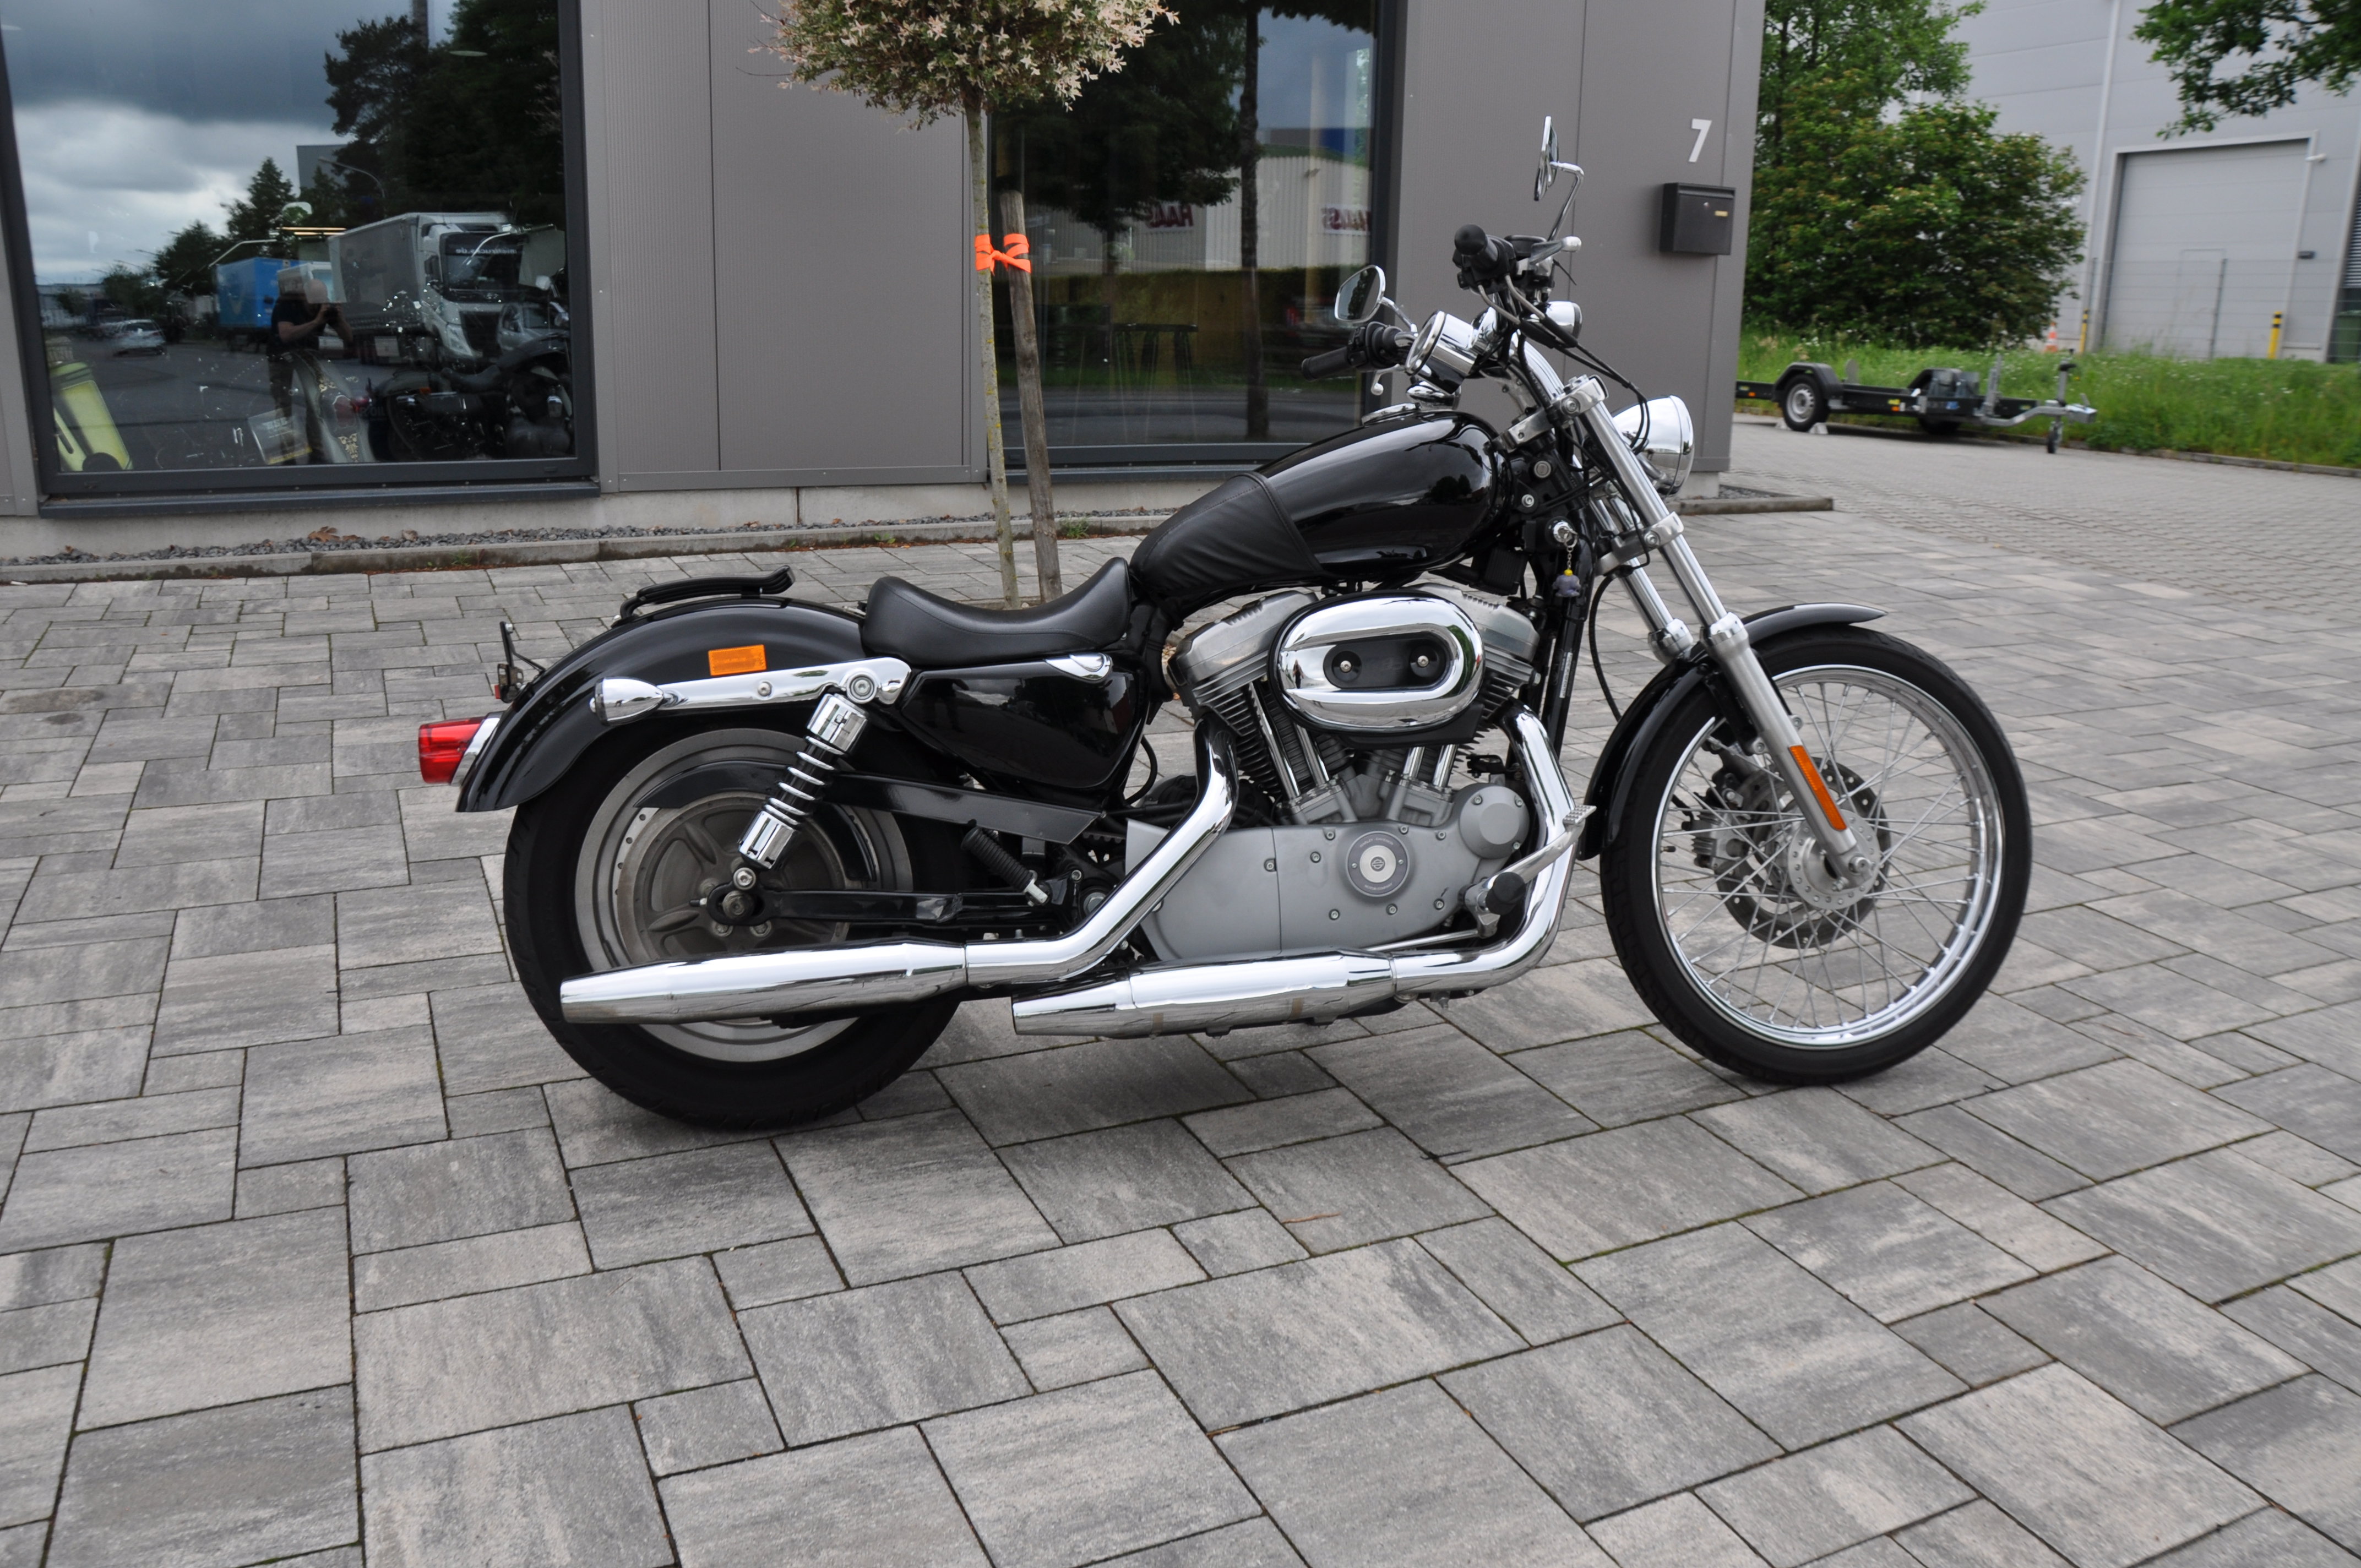 2006 Harley Davidson XL 883  im original Zustand erst 9300 km Finanzierung möglich 